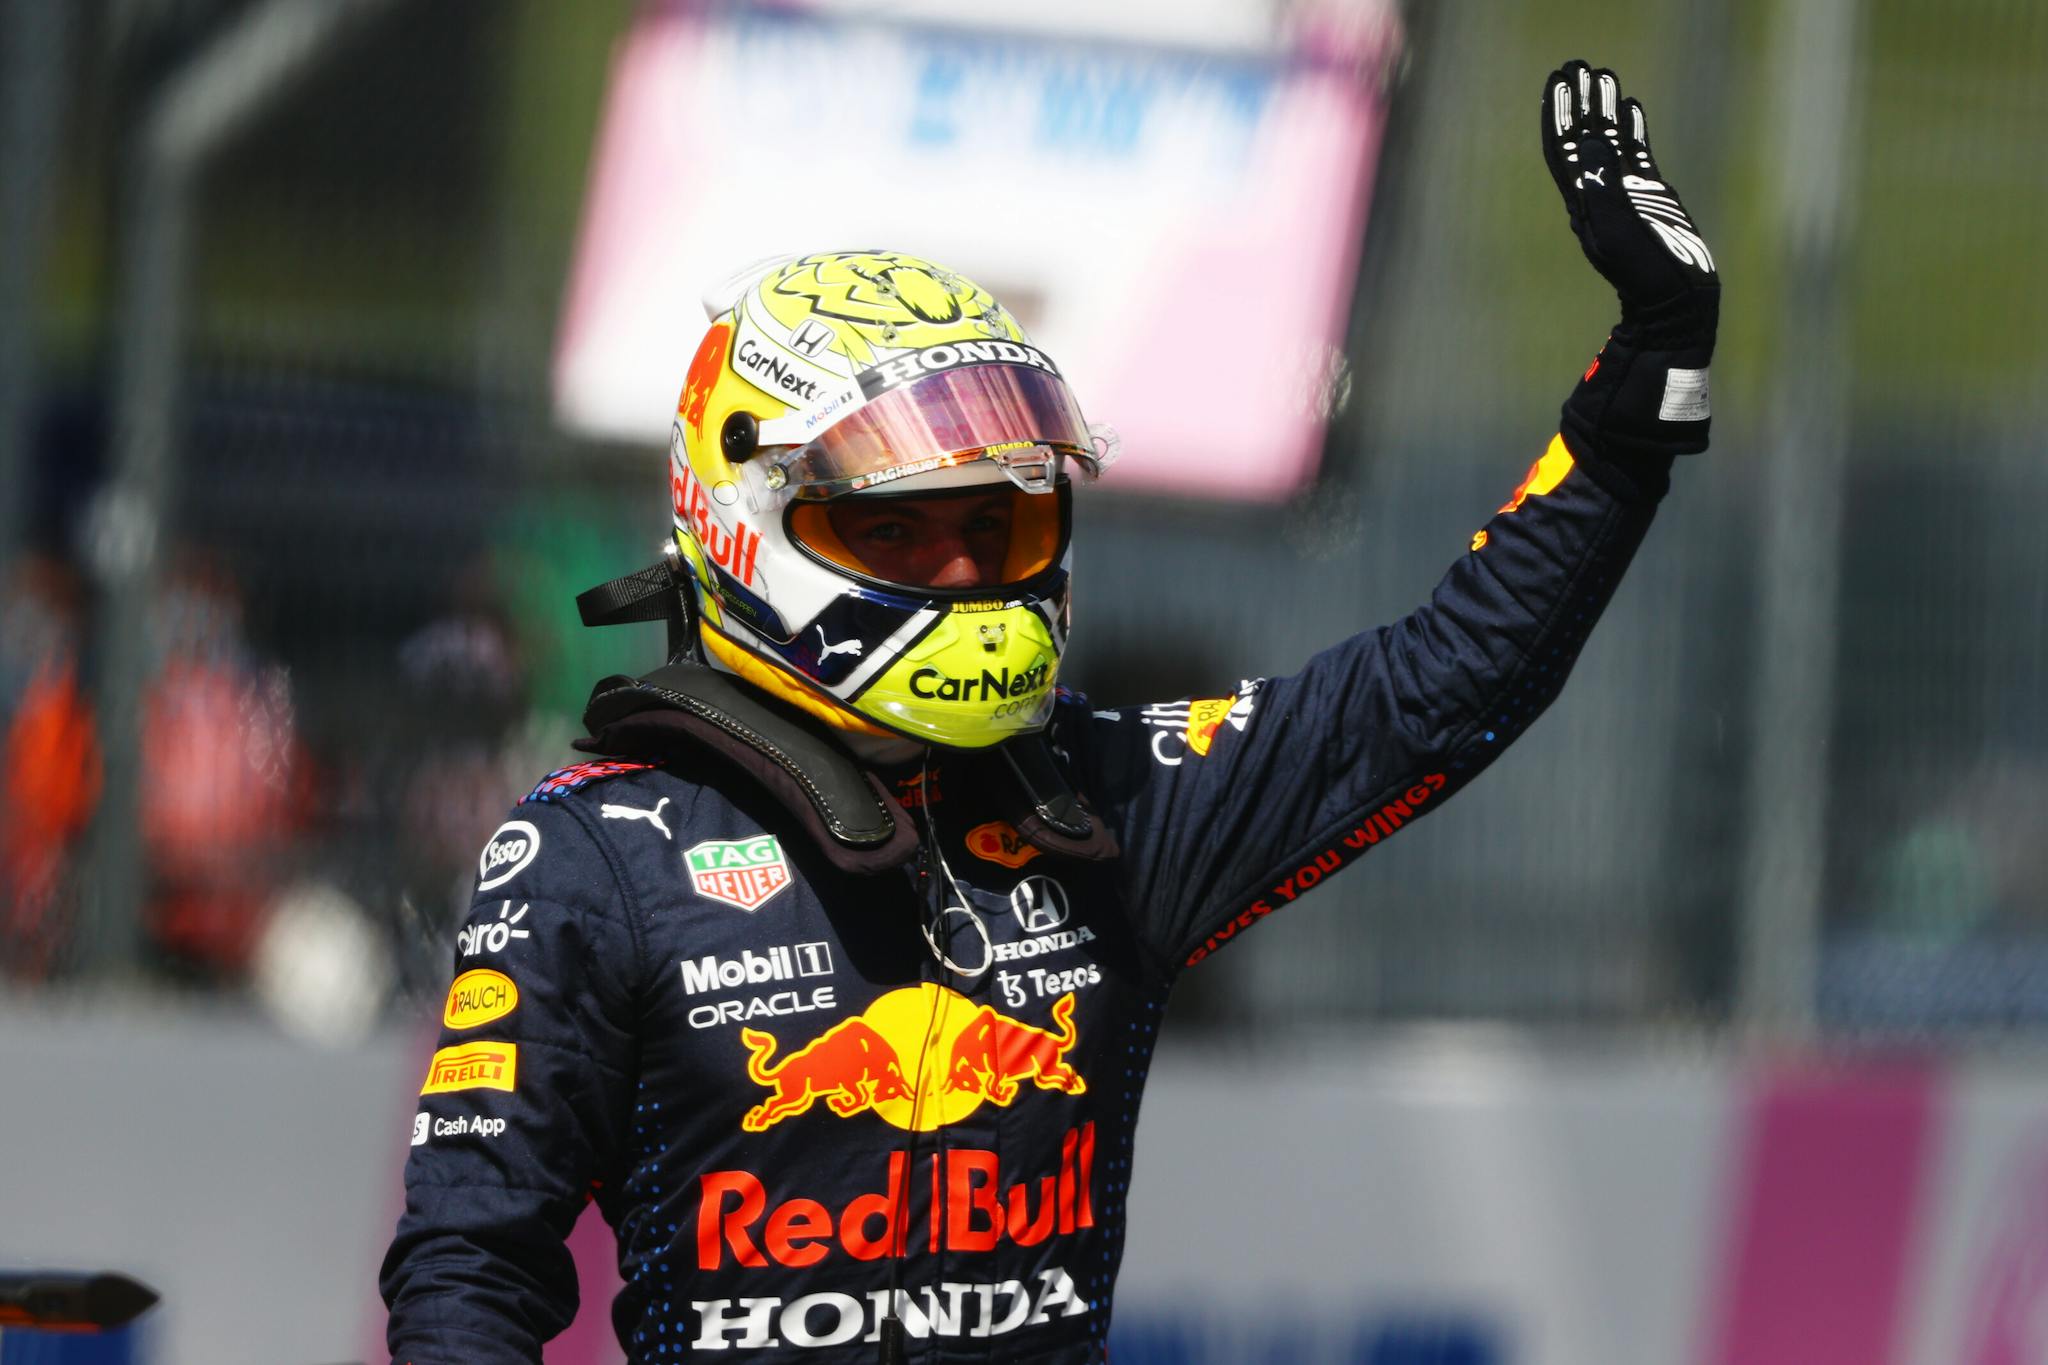 Kolejny triumf Verstappena, Norris znów na podium w Austrii!